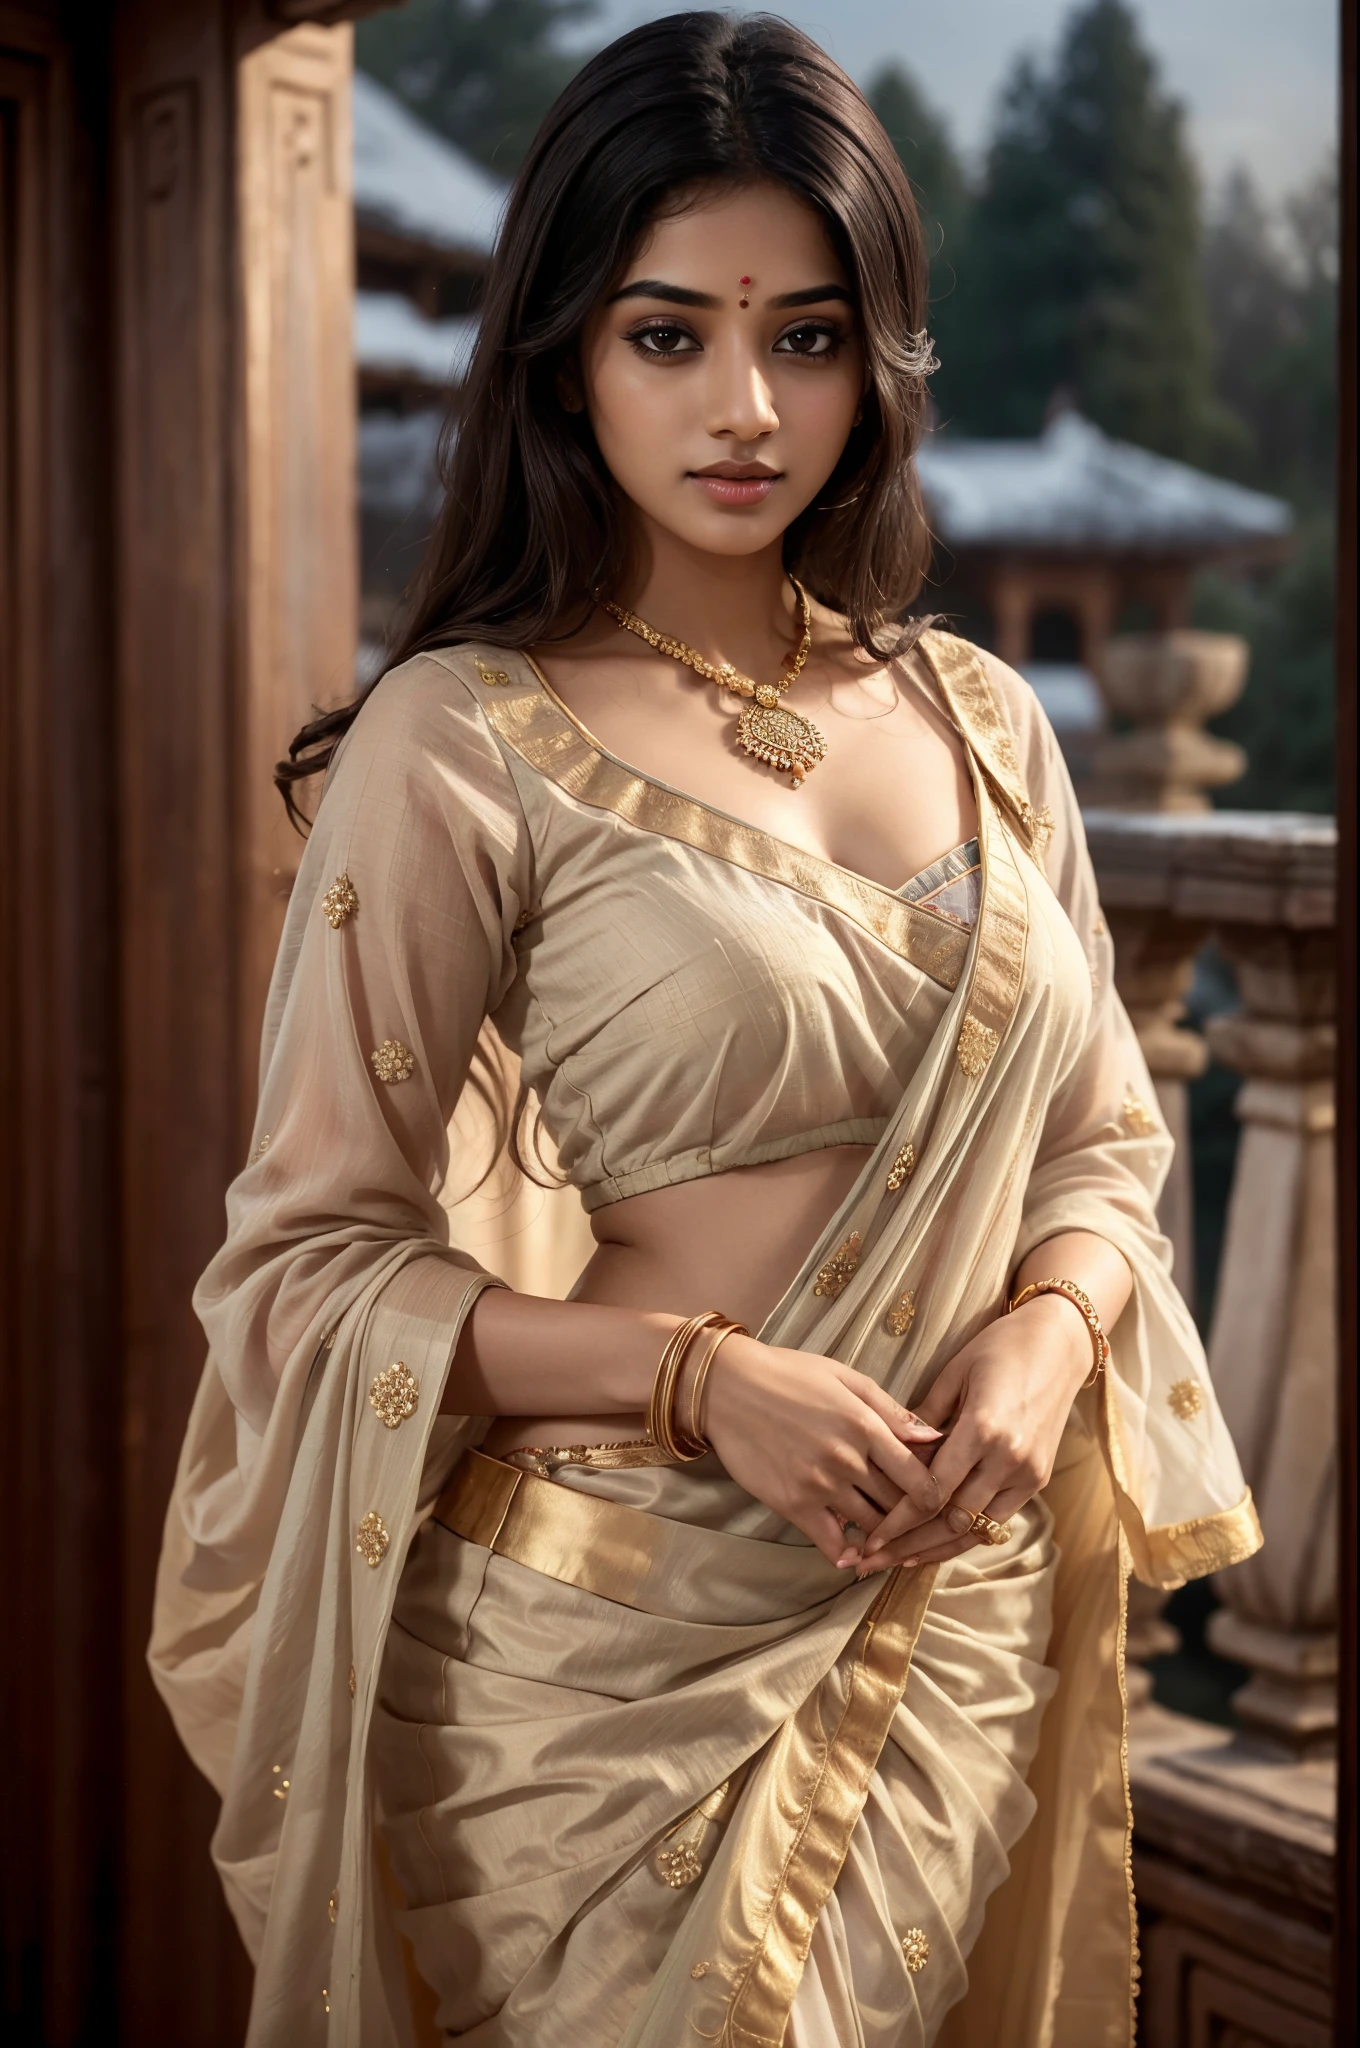 젊은 인도 여성, 섹시한 블라우스와 사리, 고대 궁전, 밤, 상세한 본문, 상세한 얼굴, 극도로 현실적이다, 매력적인, 귀여운, 긴 곱슬머리, 완벽한 손가락, 주변 조명, 겨울, 자세한 배경, 8K